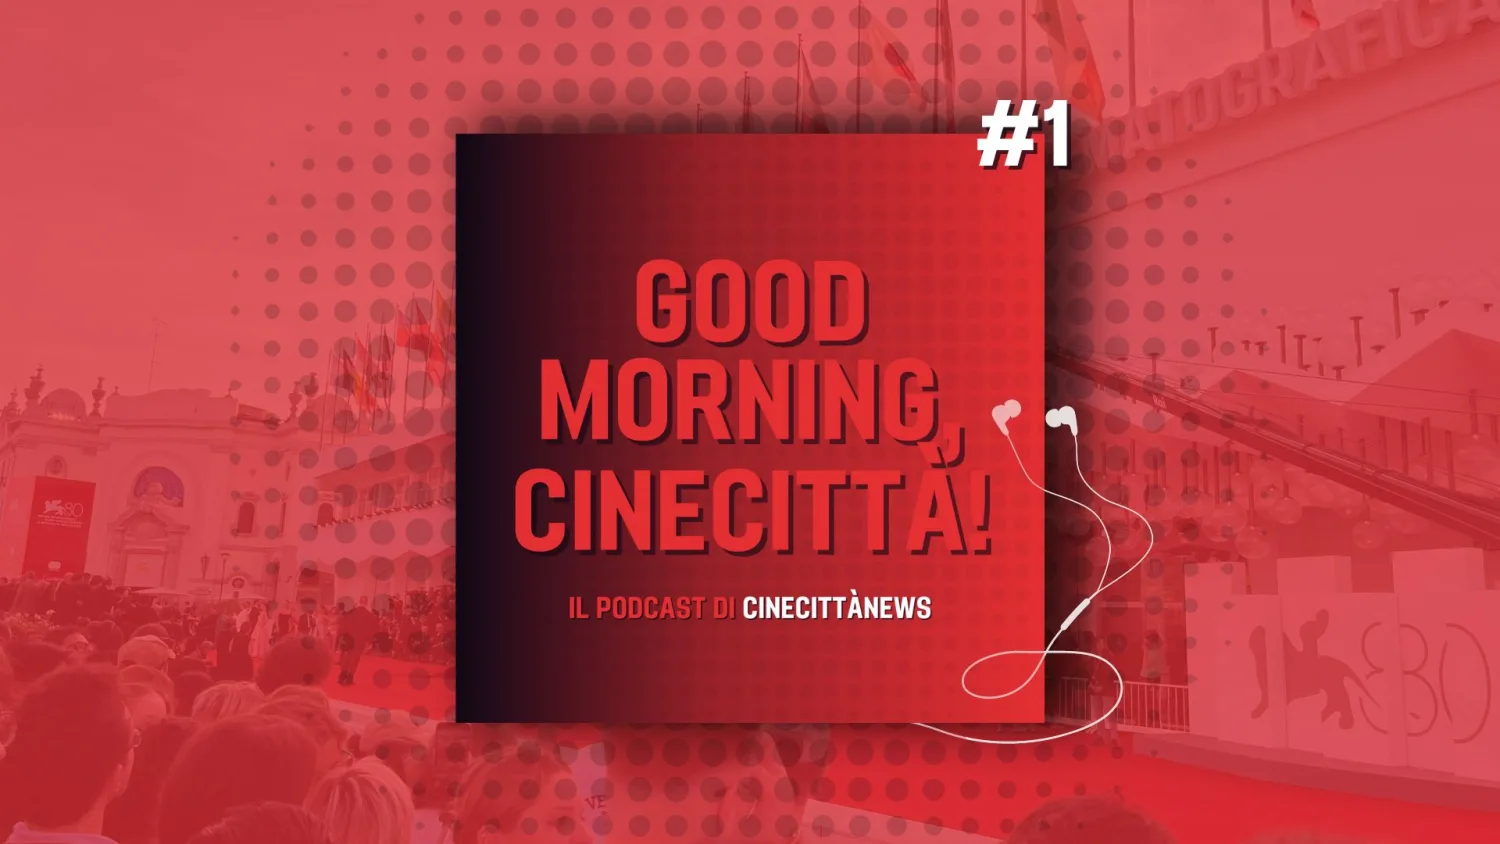 Good Morning, Cinecittà!, il primo episodio della rassegna stampa podcast da Venezia80